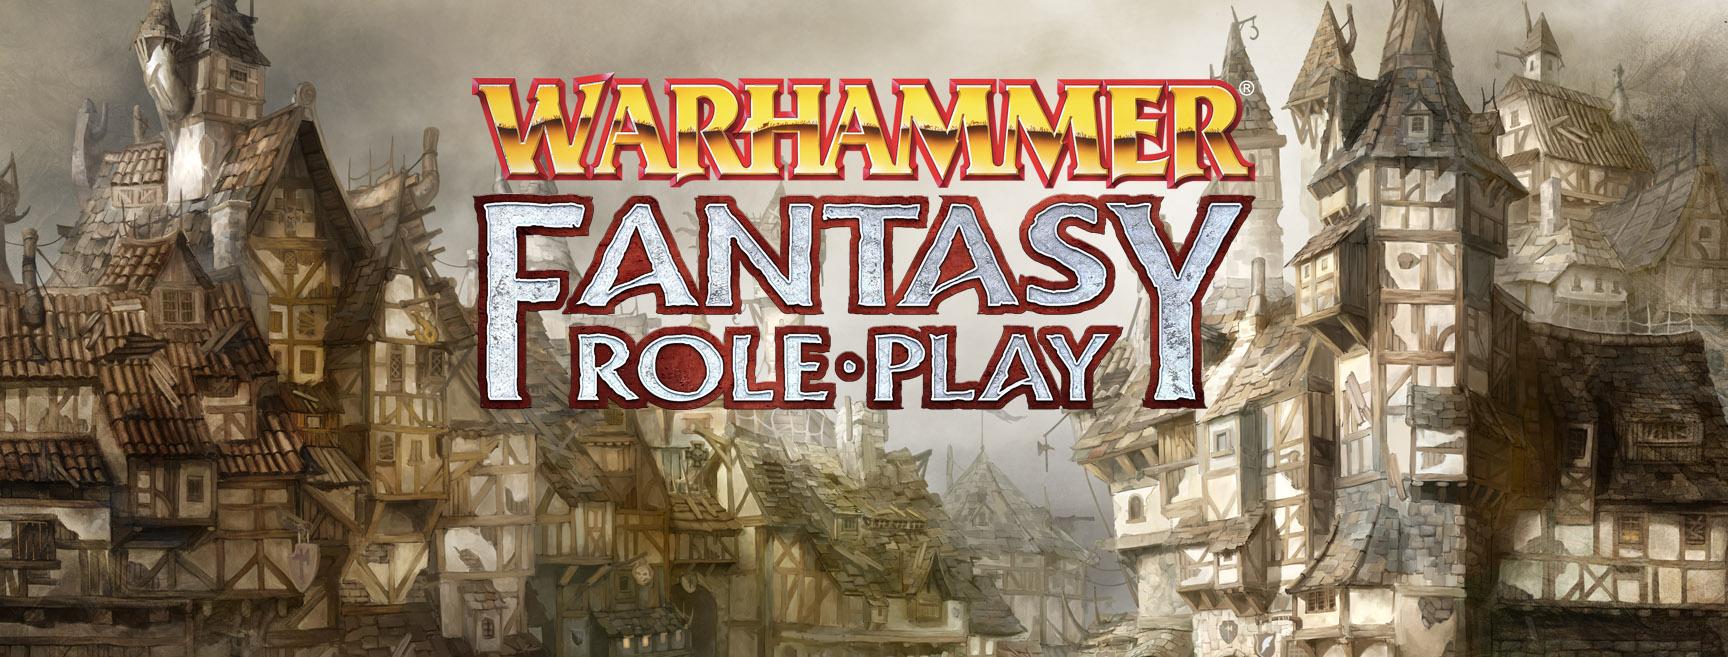 Maggiori informazioni riguardo "Ora in preordine la 4a Edizione di Warhammer Fantasy Roleplay"